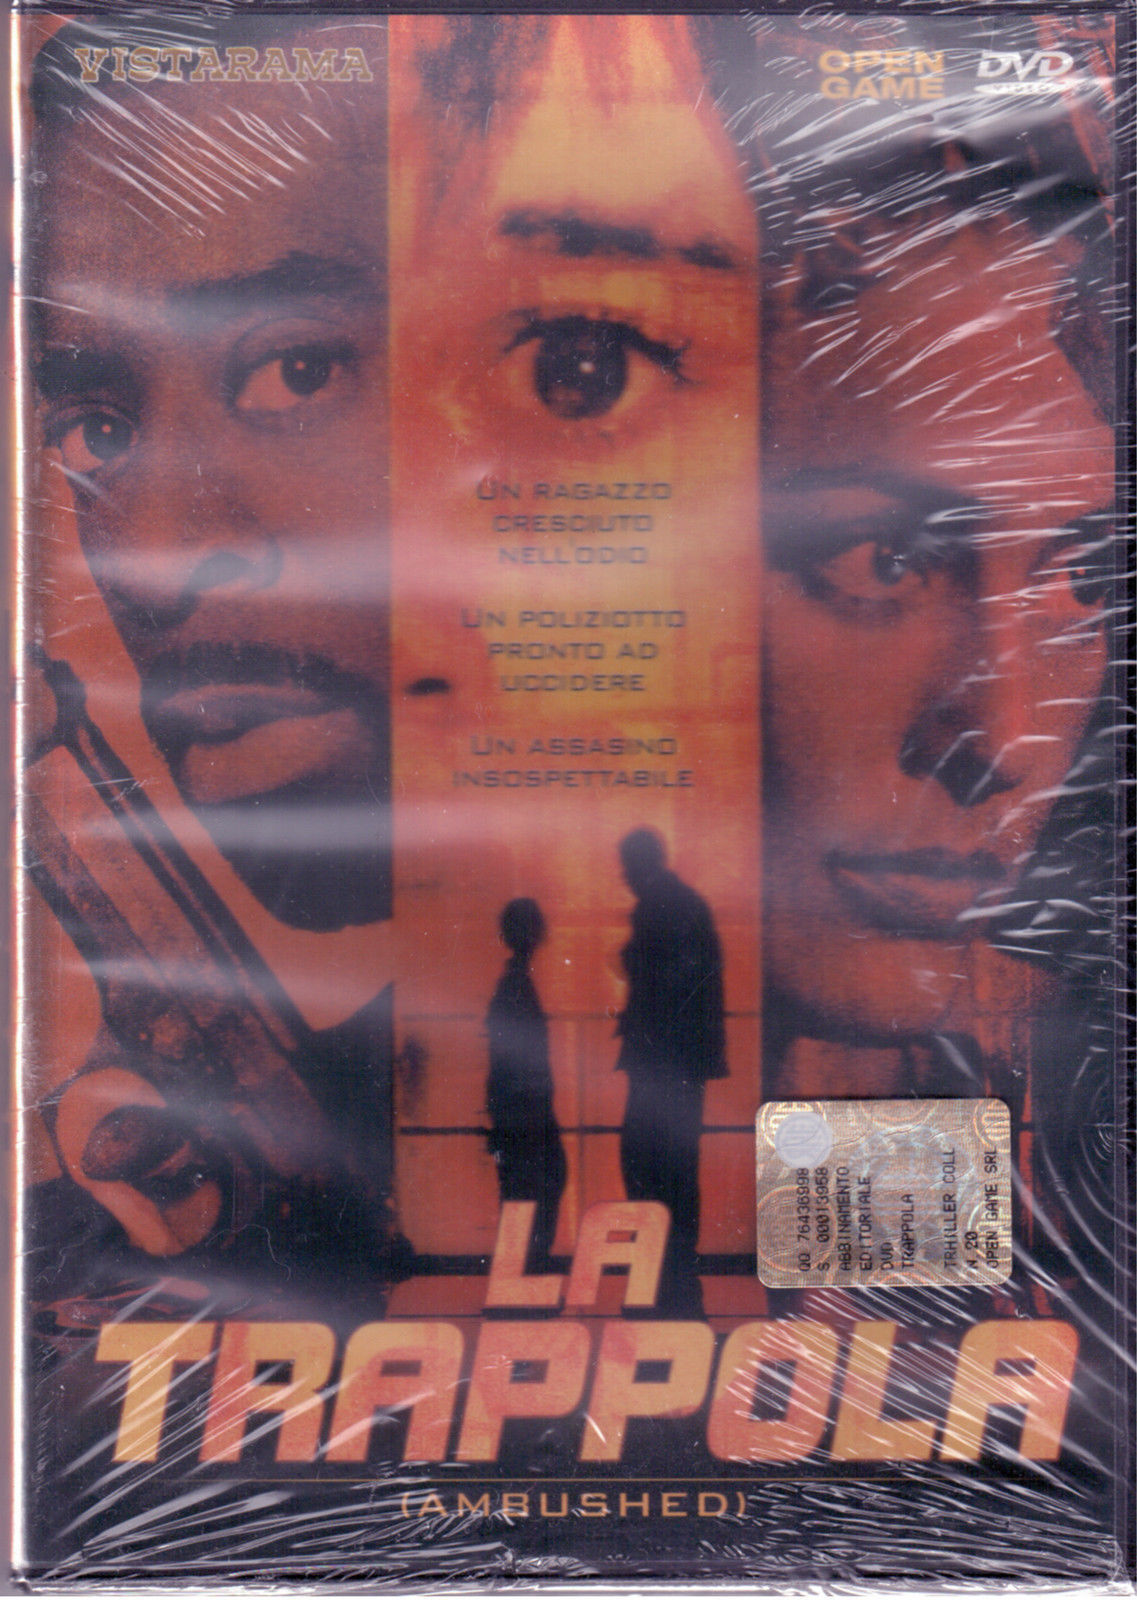 LA TRAPPOLA - Ernest Dickerson -VISTARAMA - 1998 - DVD - M